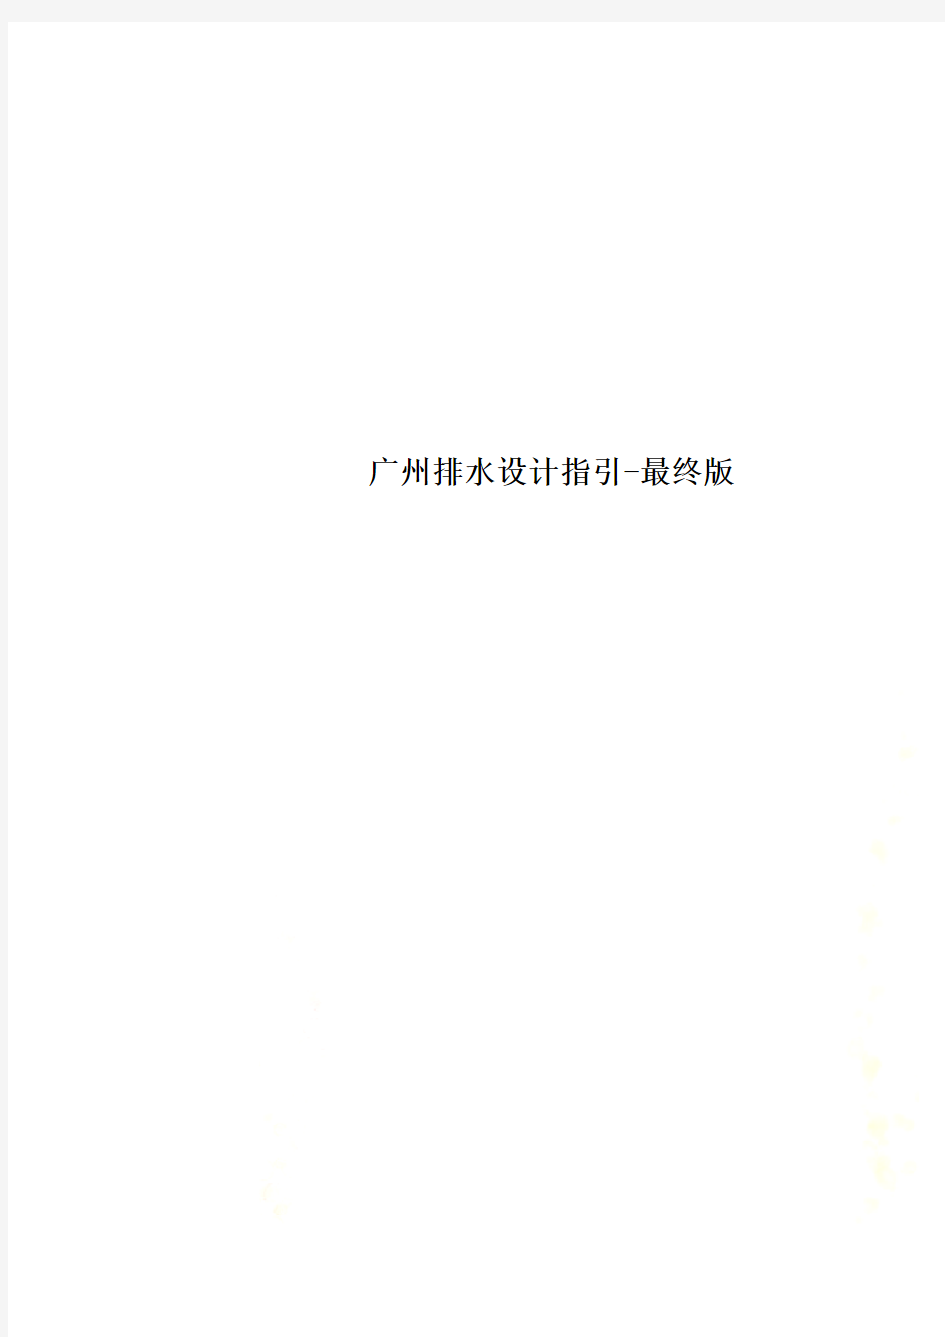 广州排水设计指引-最终版